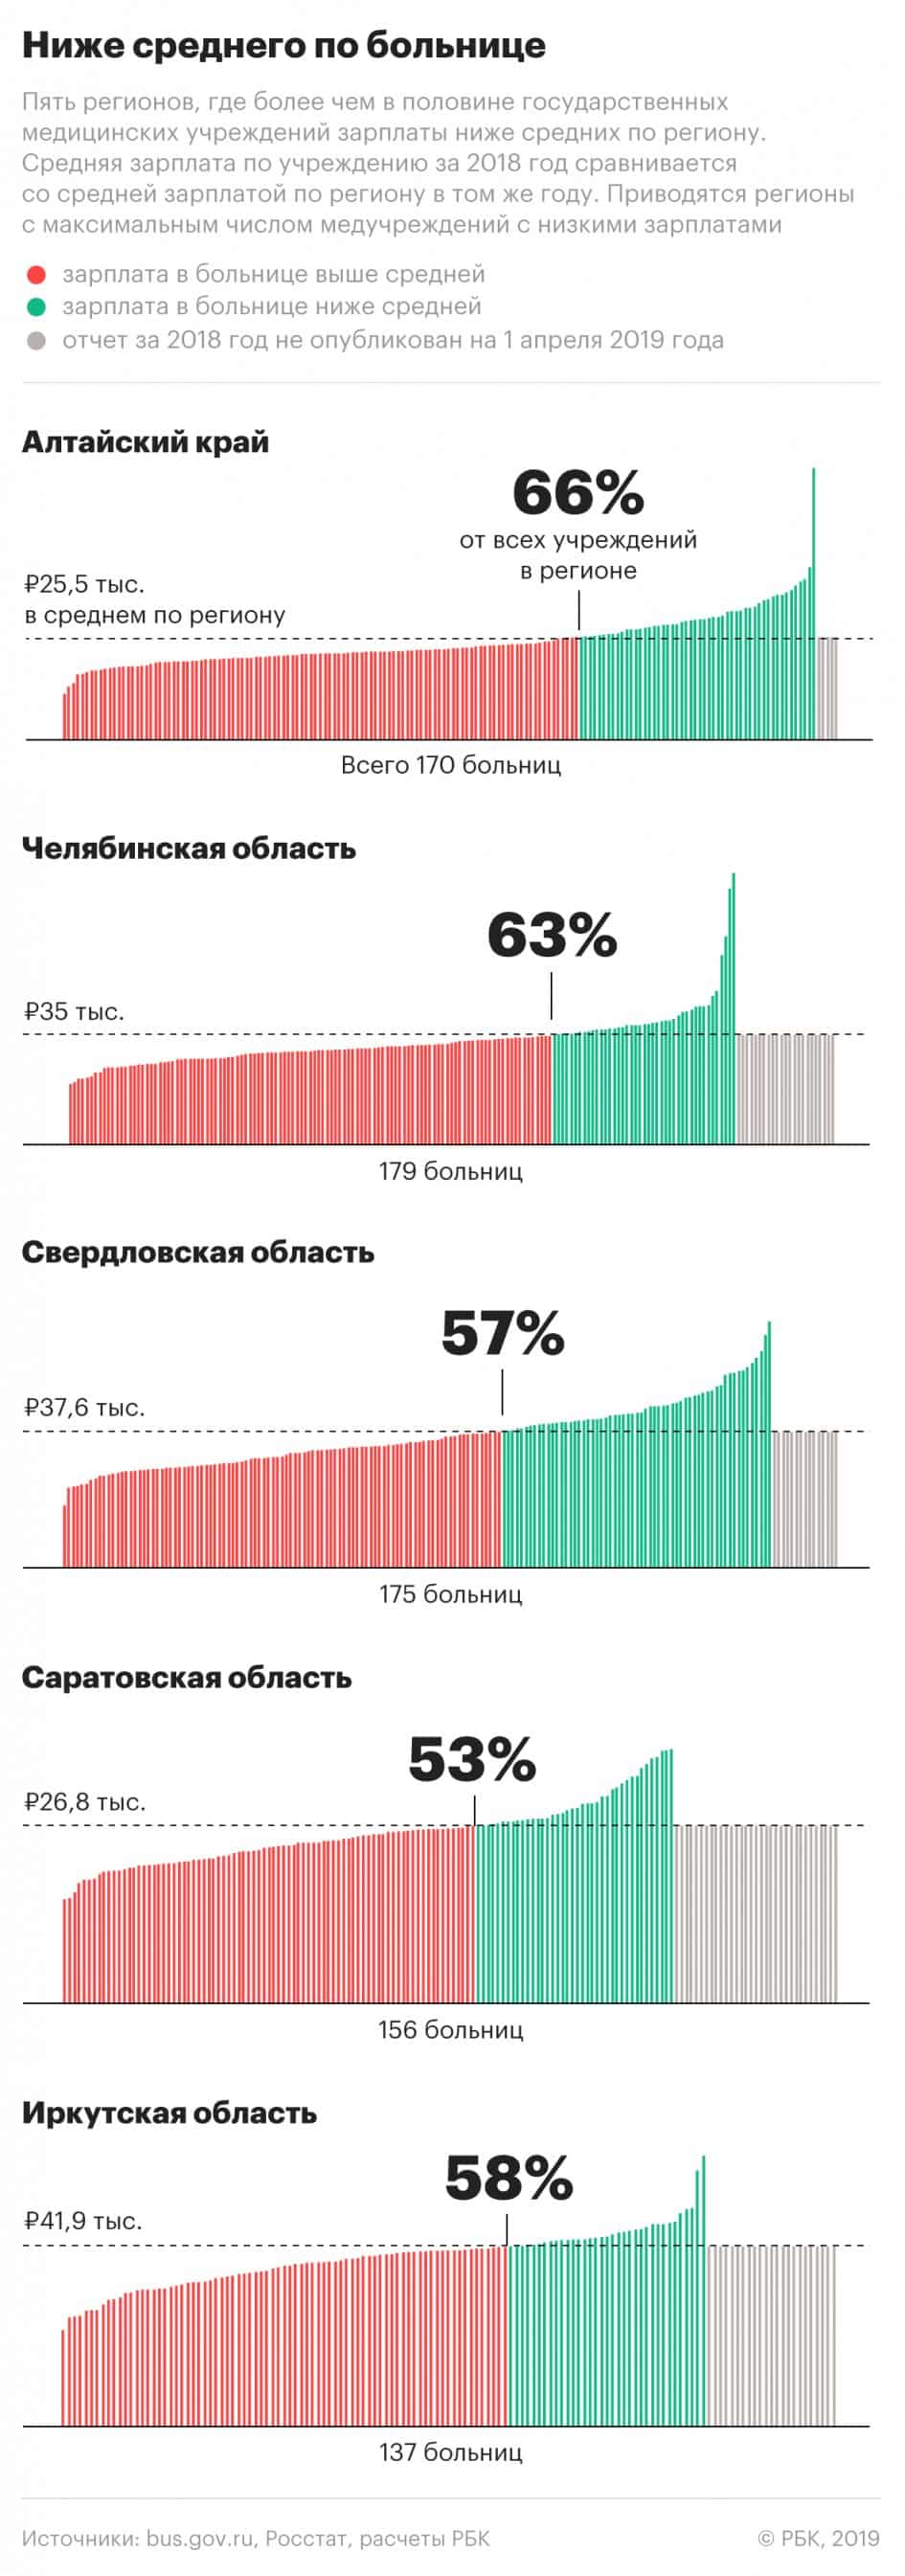 В трети российских медучреждений зарплаты медицинских работников в 2018 году оказались ниже среднего уровня по региону, то есть «майские указы» остаются невыполненными, передаёт РБК. Больше всего таких учреждений обнаружилось в Алтайском крае — 113 больниц из 170, Челябинской (113 из 179) и Ростовской области (112 из 257). ​Это следует из бухгалтерской отчетности медицинских организаций по всей стране.